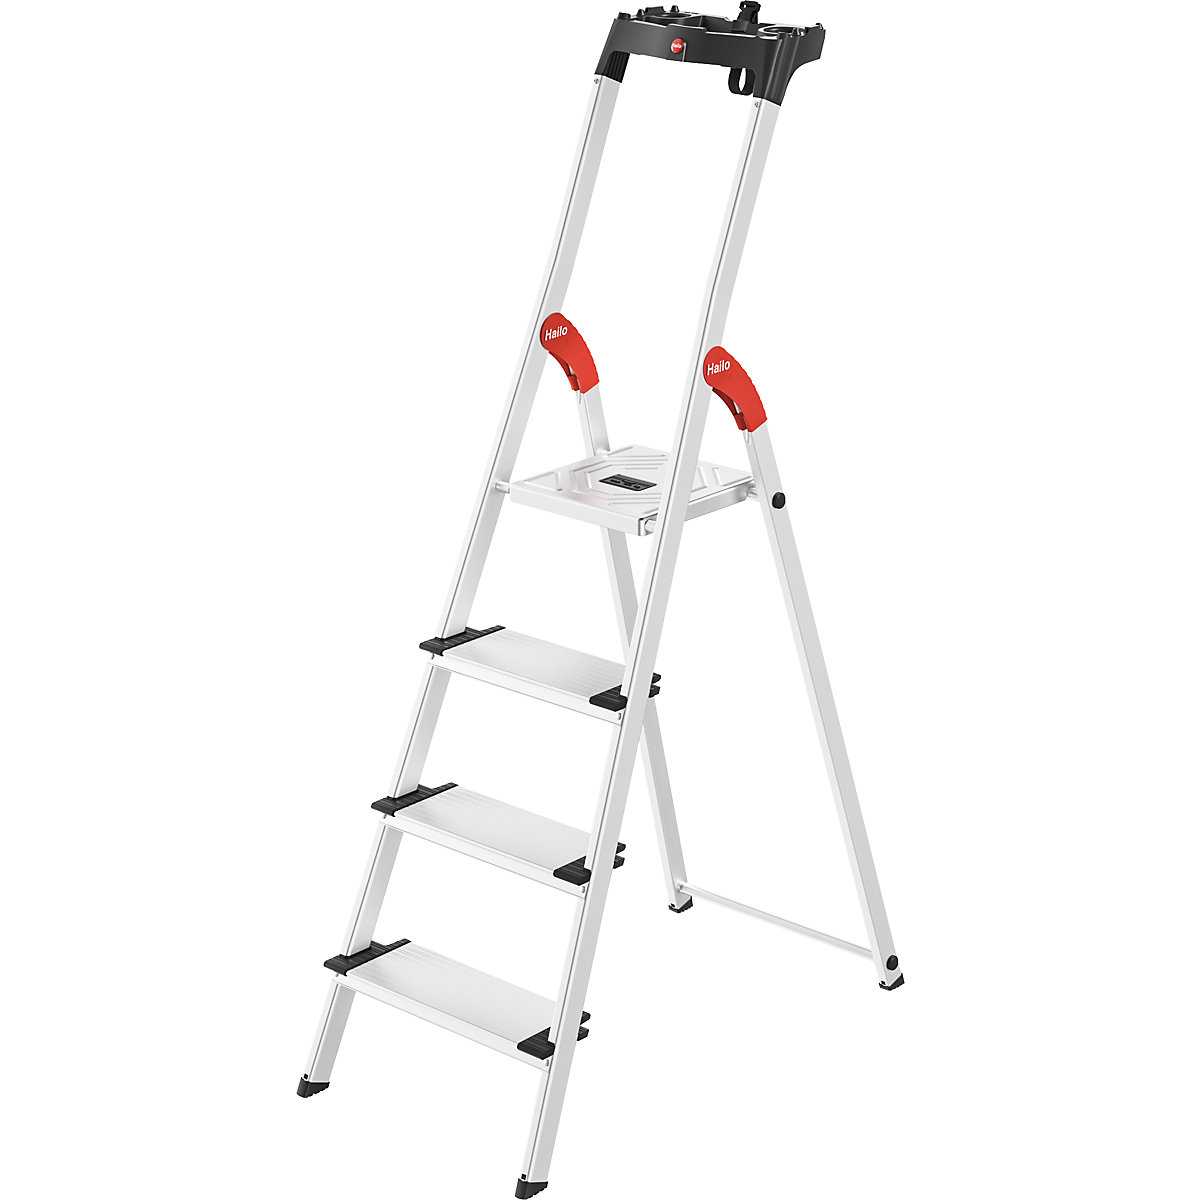 Aluminijasta dvokraka lestev s stopnicami ComfortLine L80 – Hailo, nosilnost 150 kg, 4 stopnice, od 5 kosov